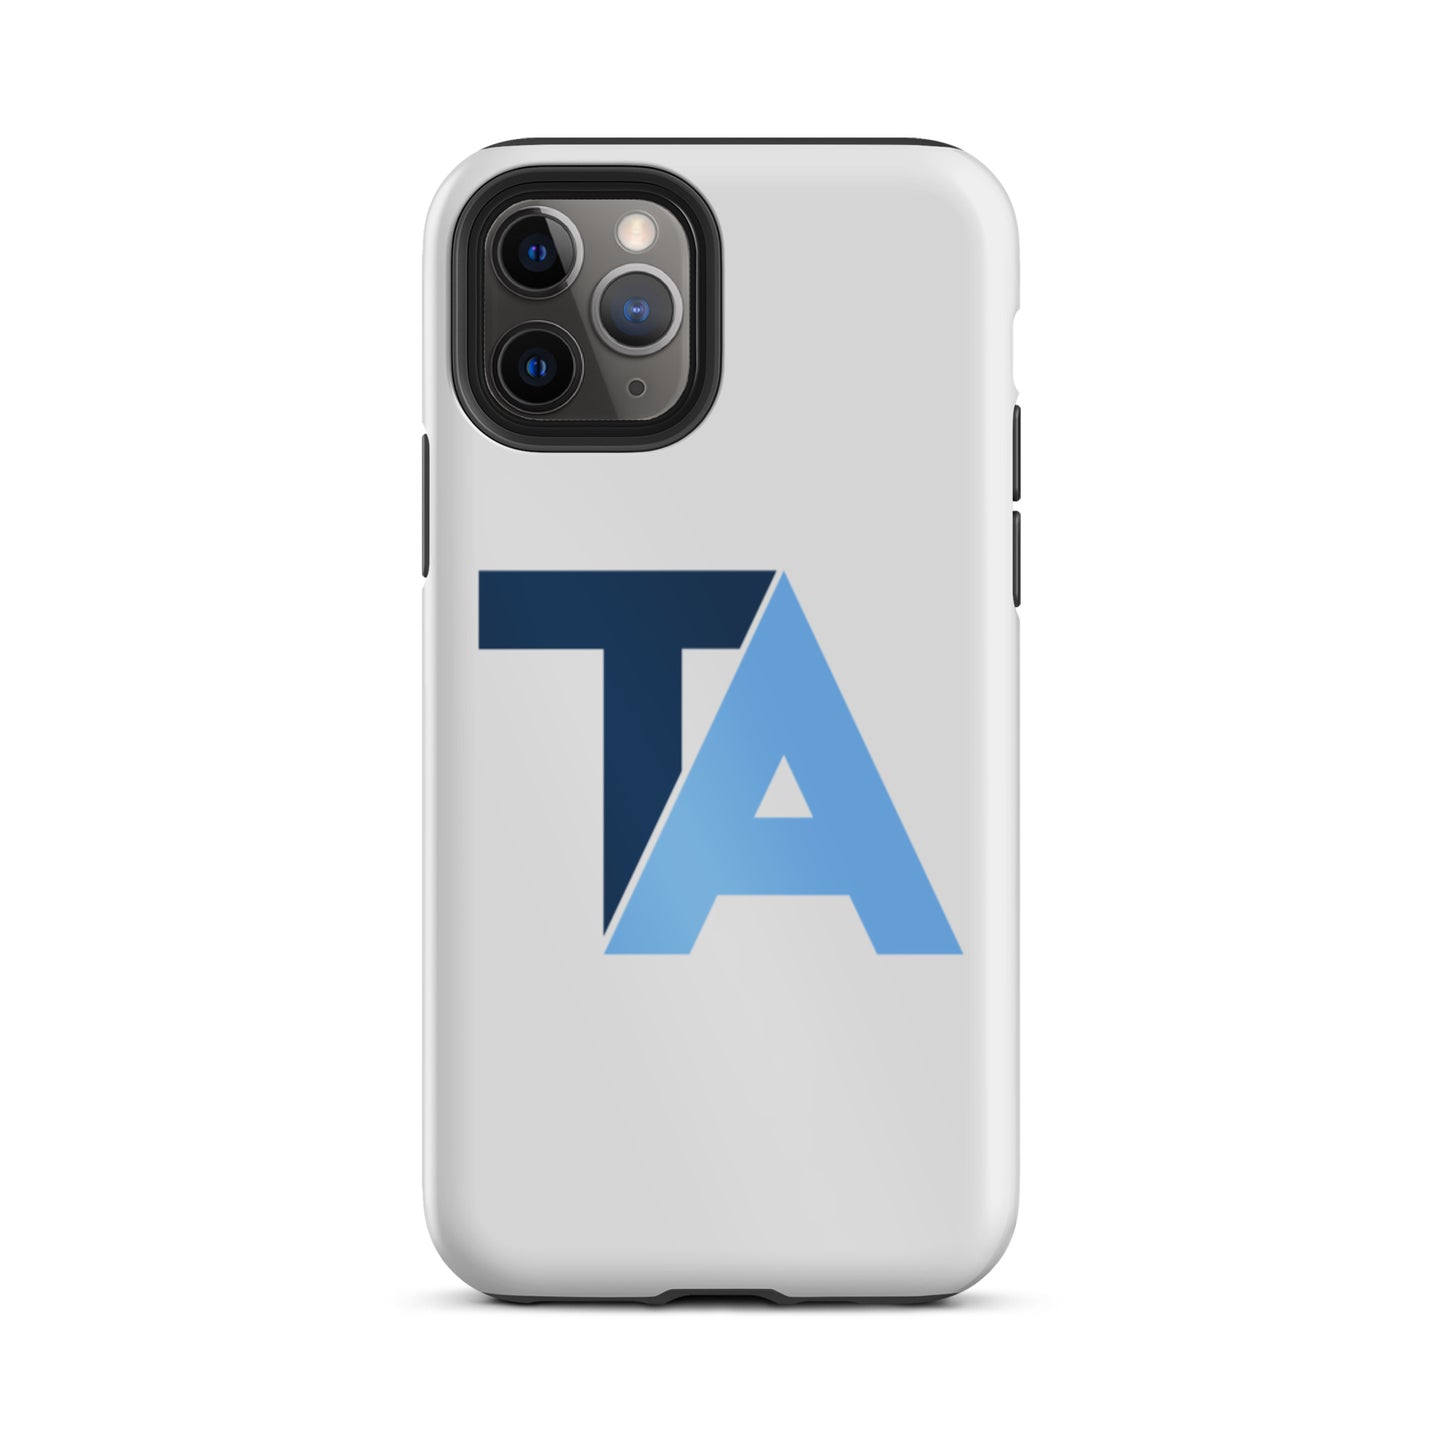 TA Tough iPhone case